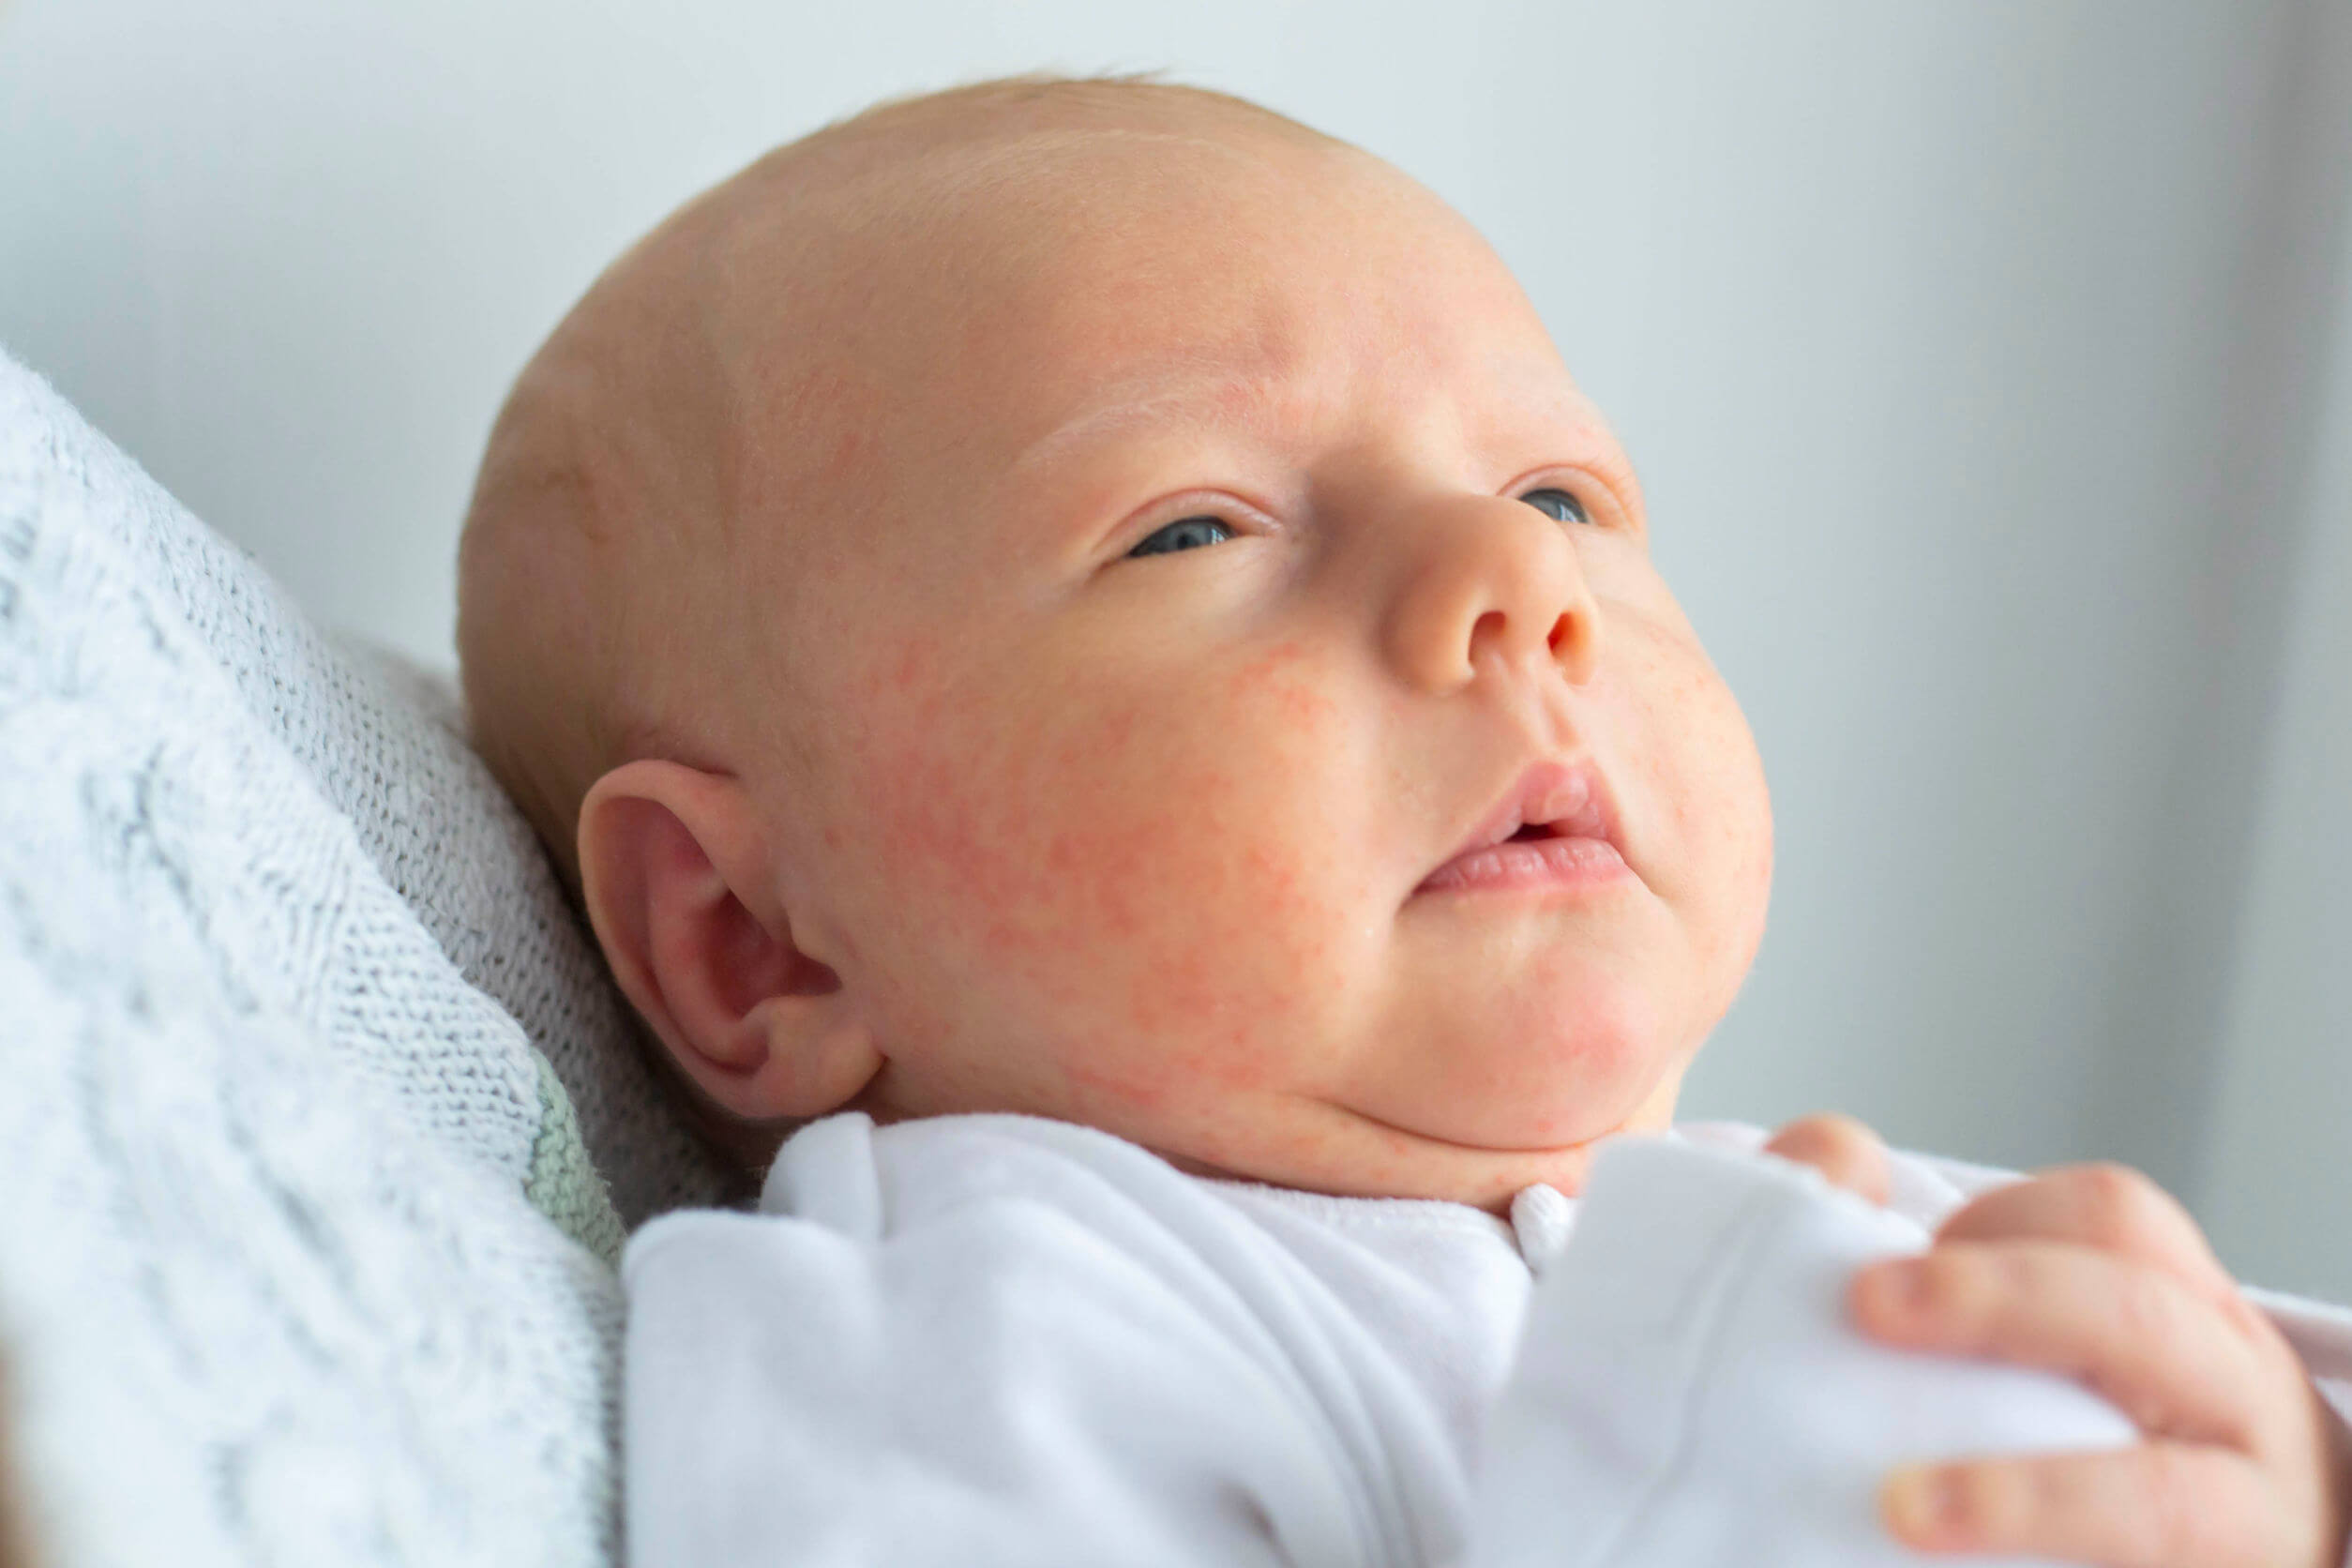 Eczema in babies is common